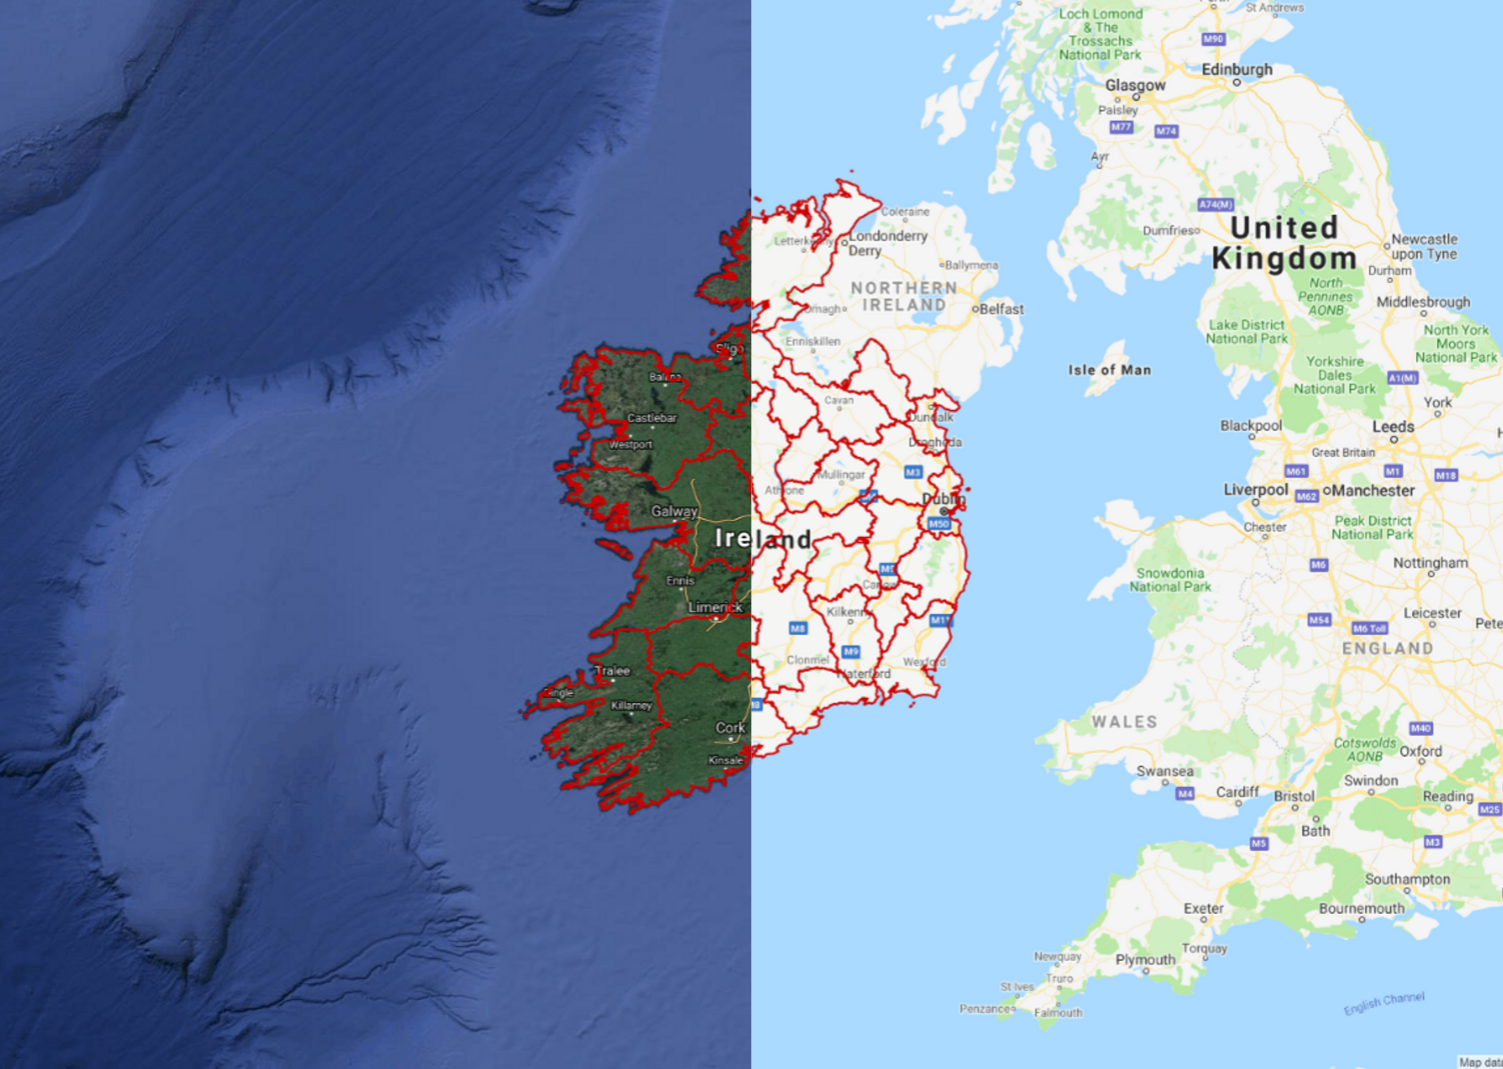 The Irish County Boundaries